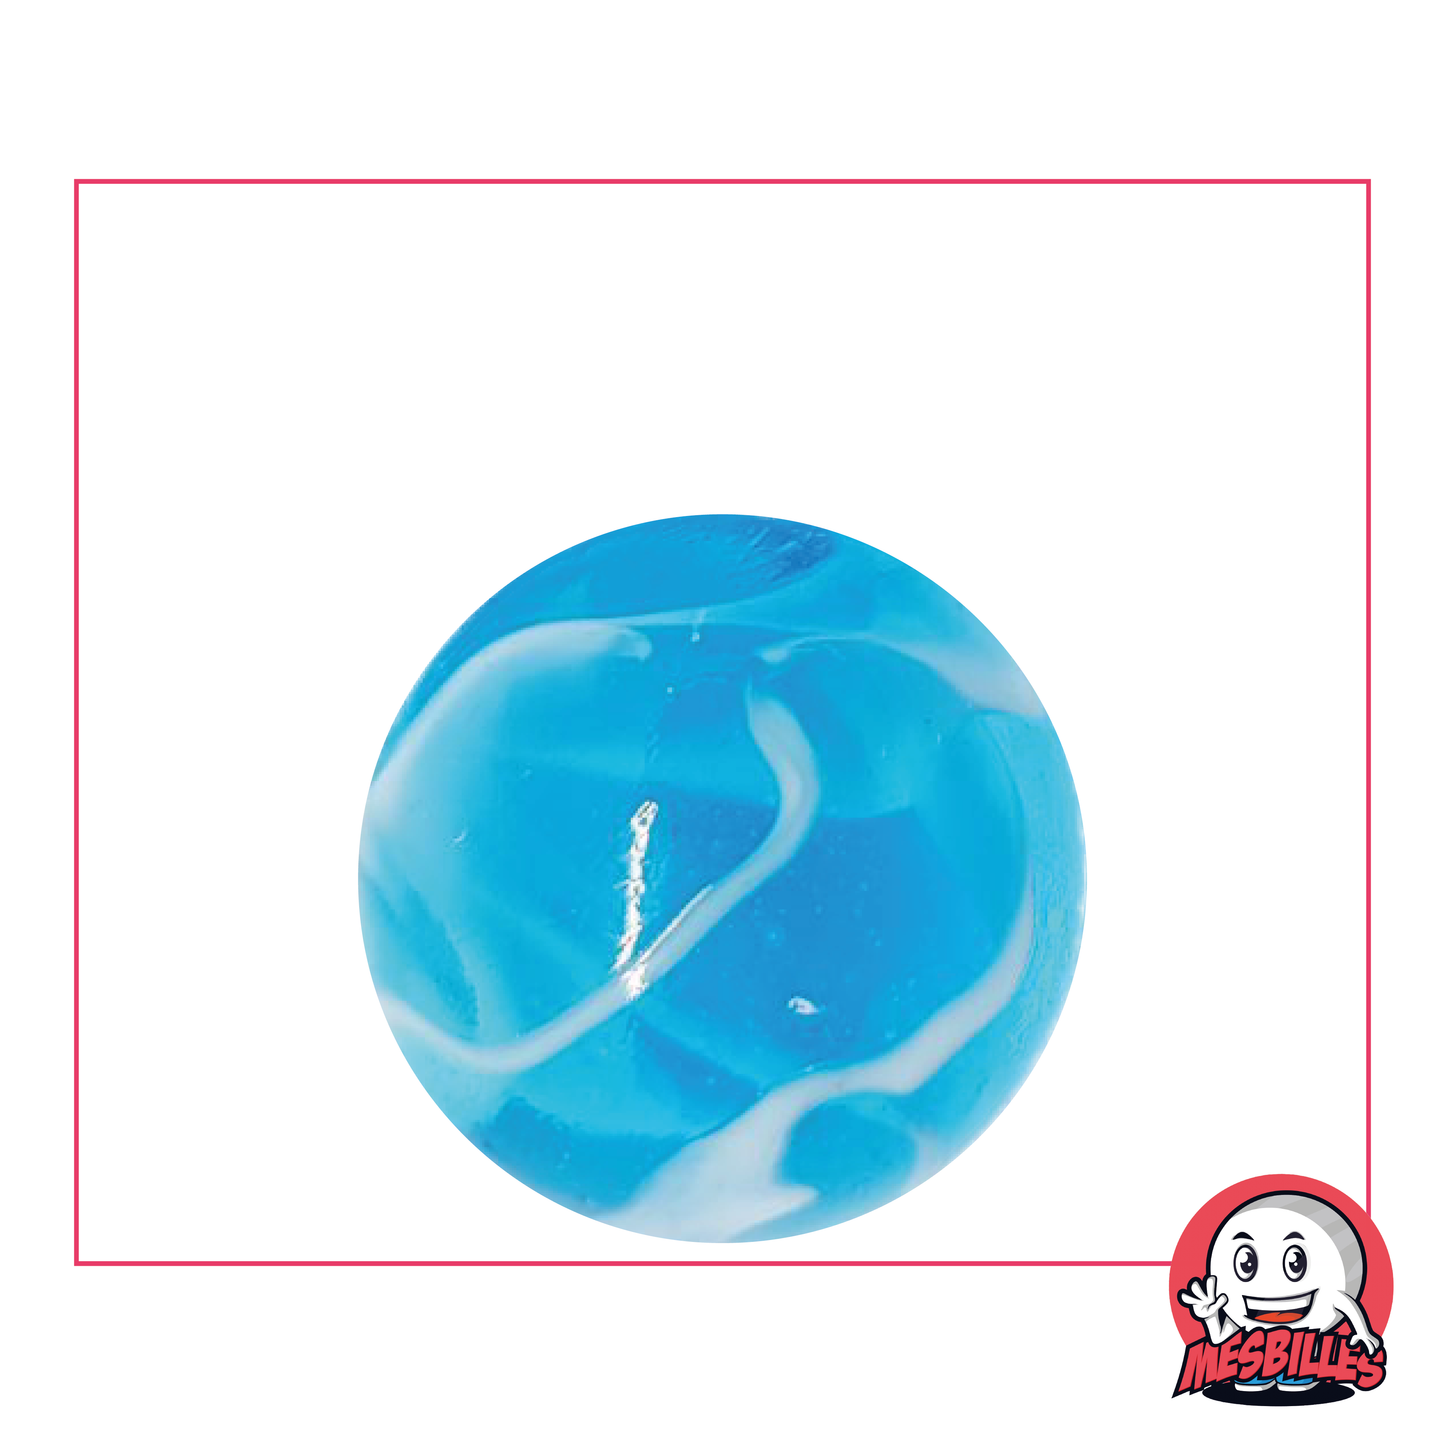 Bille H2O 25mm, en verre translucide bleu traversée de blanc, attrayant pour les amateurs de billes